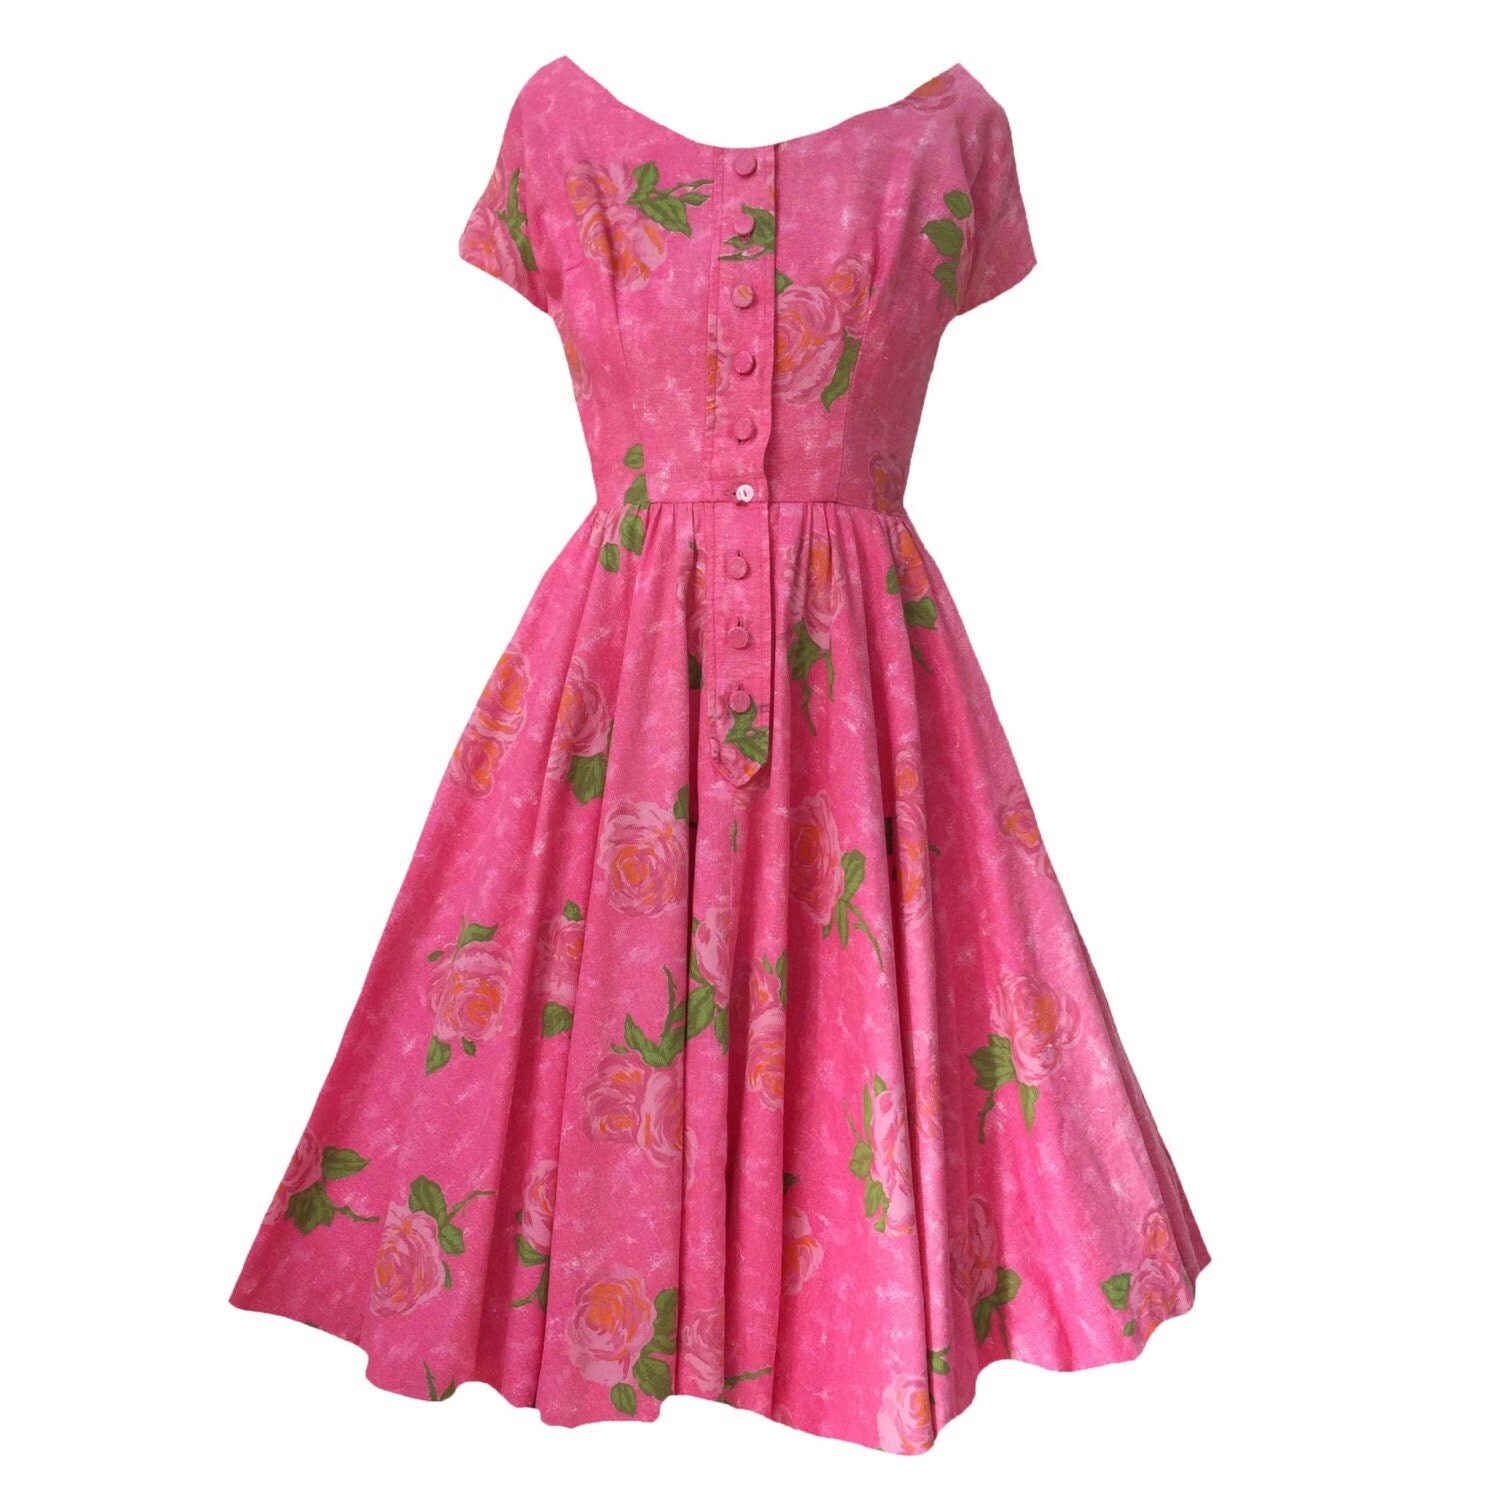 1950s pink floral vintage dress